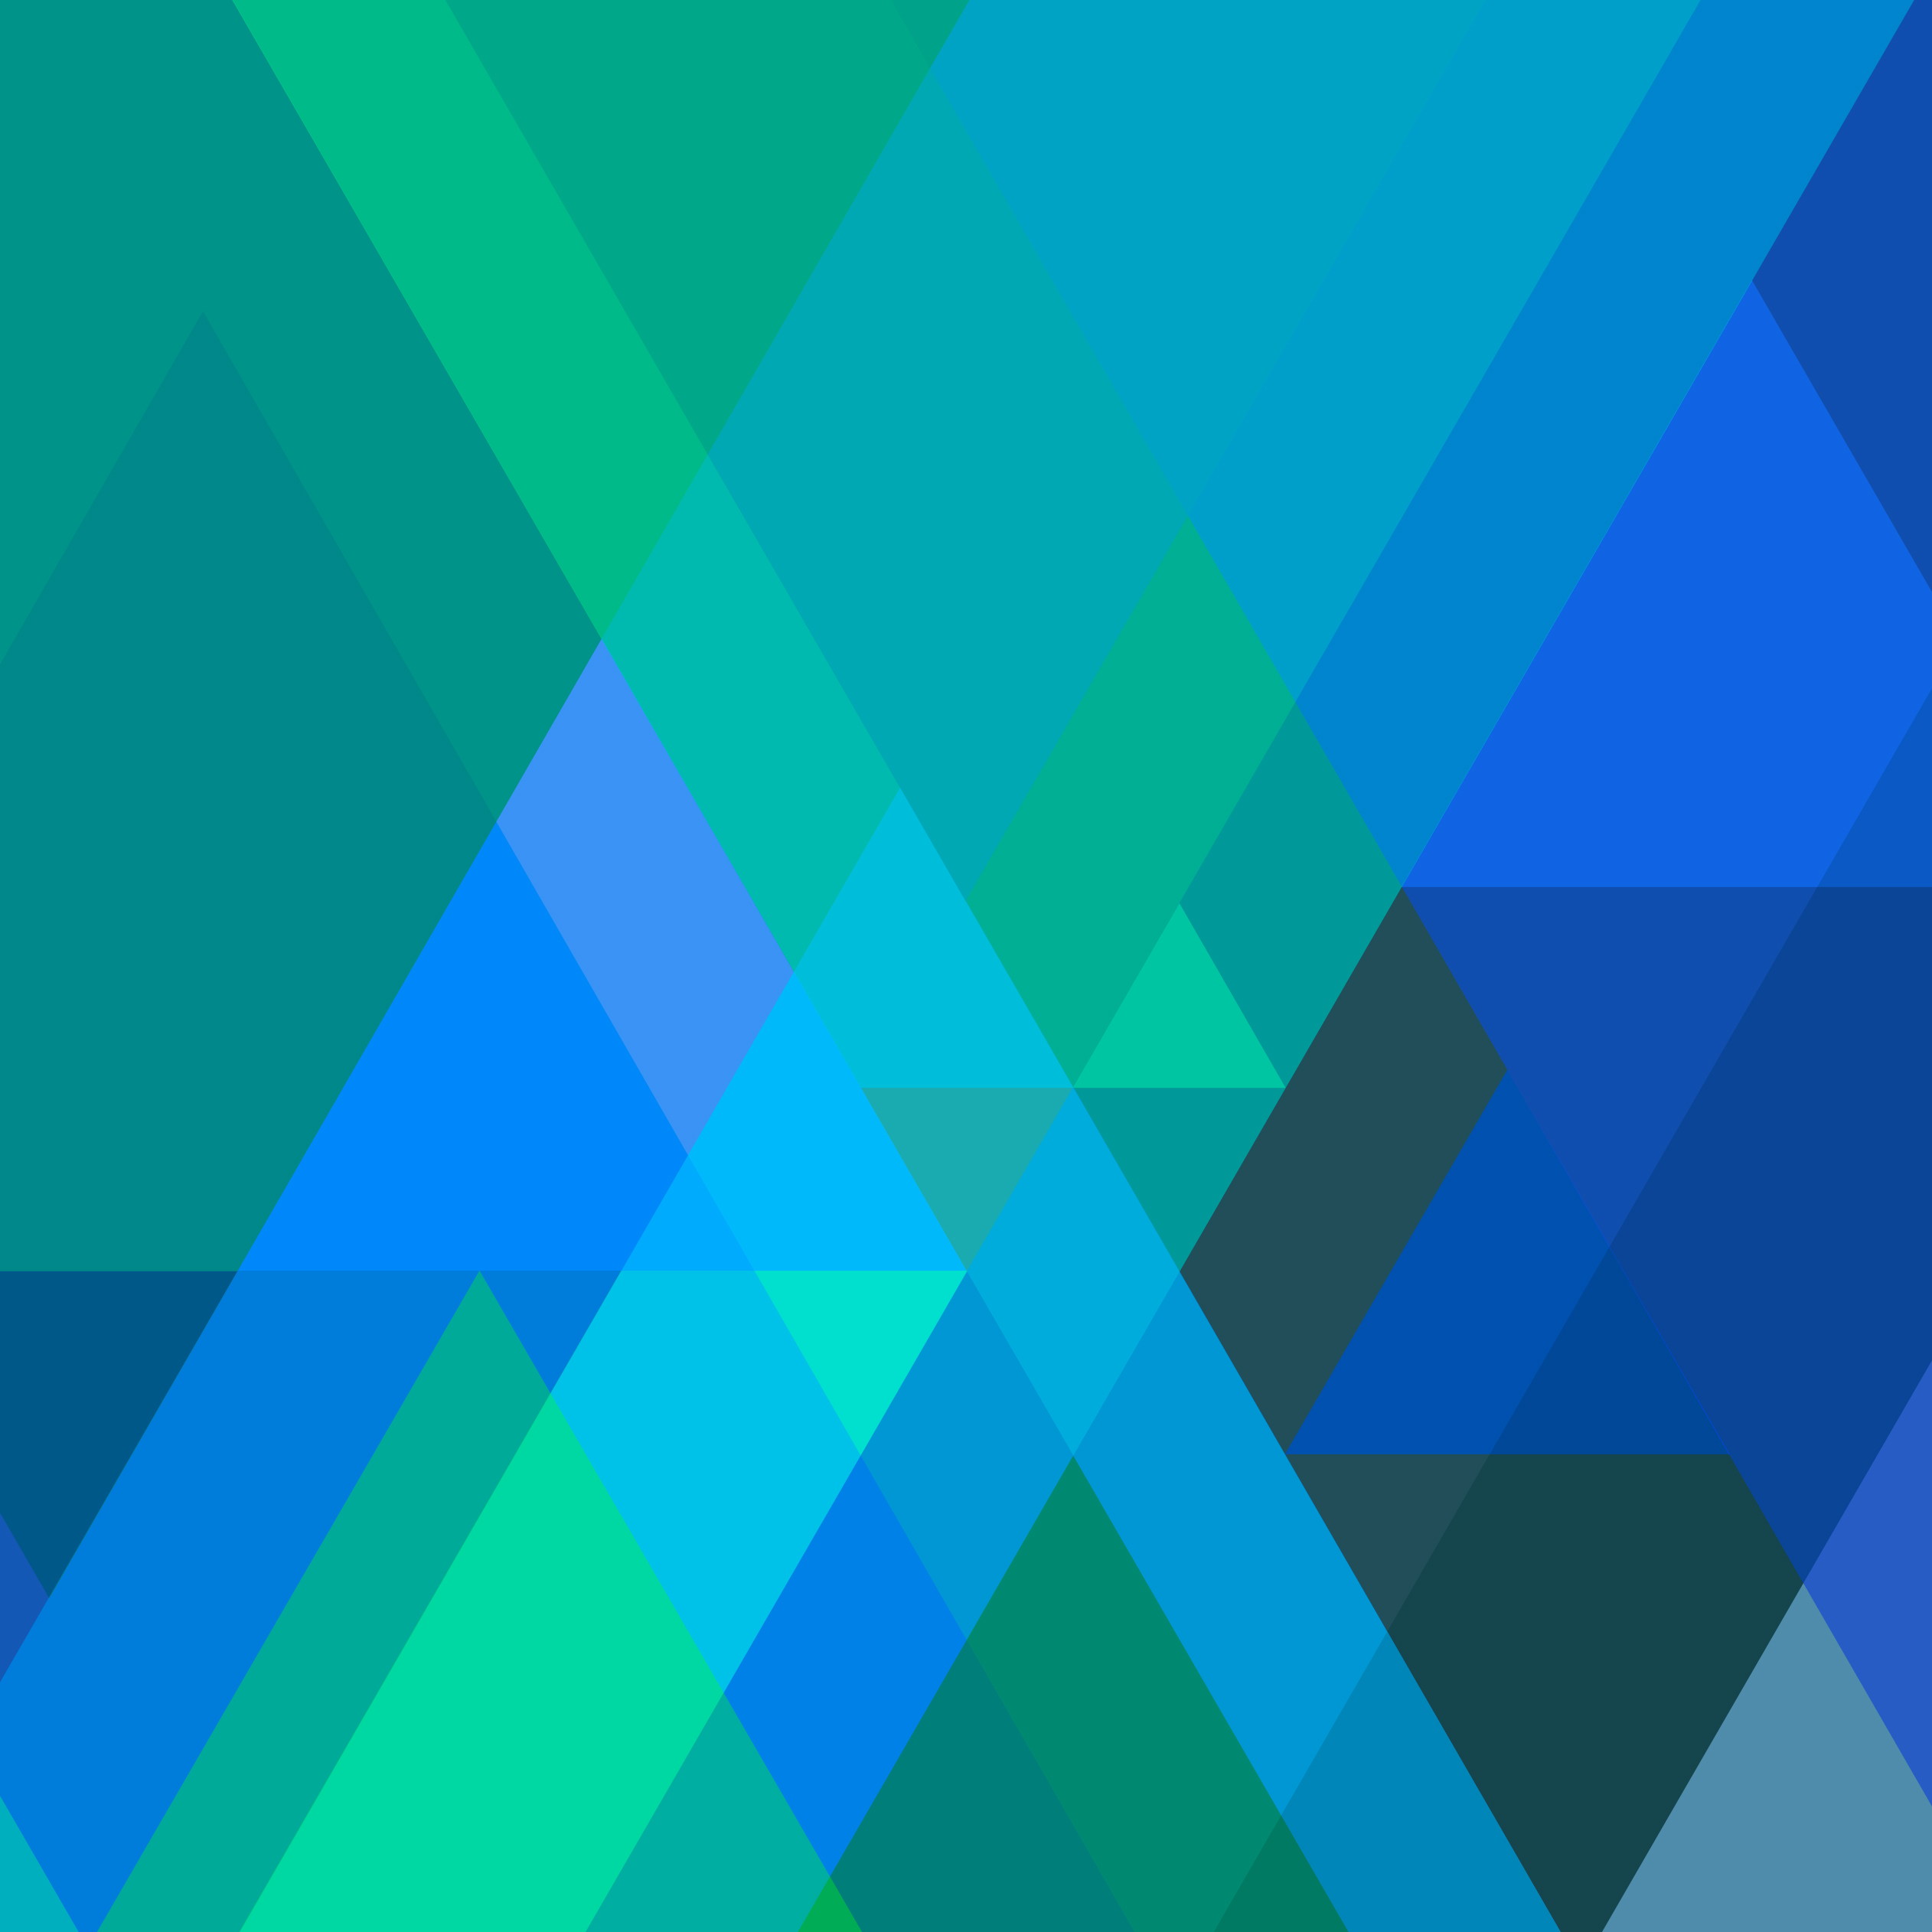 ios 7 wallpaper ipad,blue,green,aqua,cobalt blue,turquoise